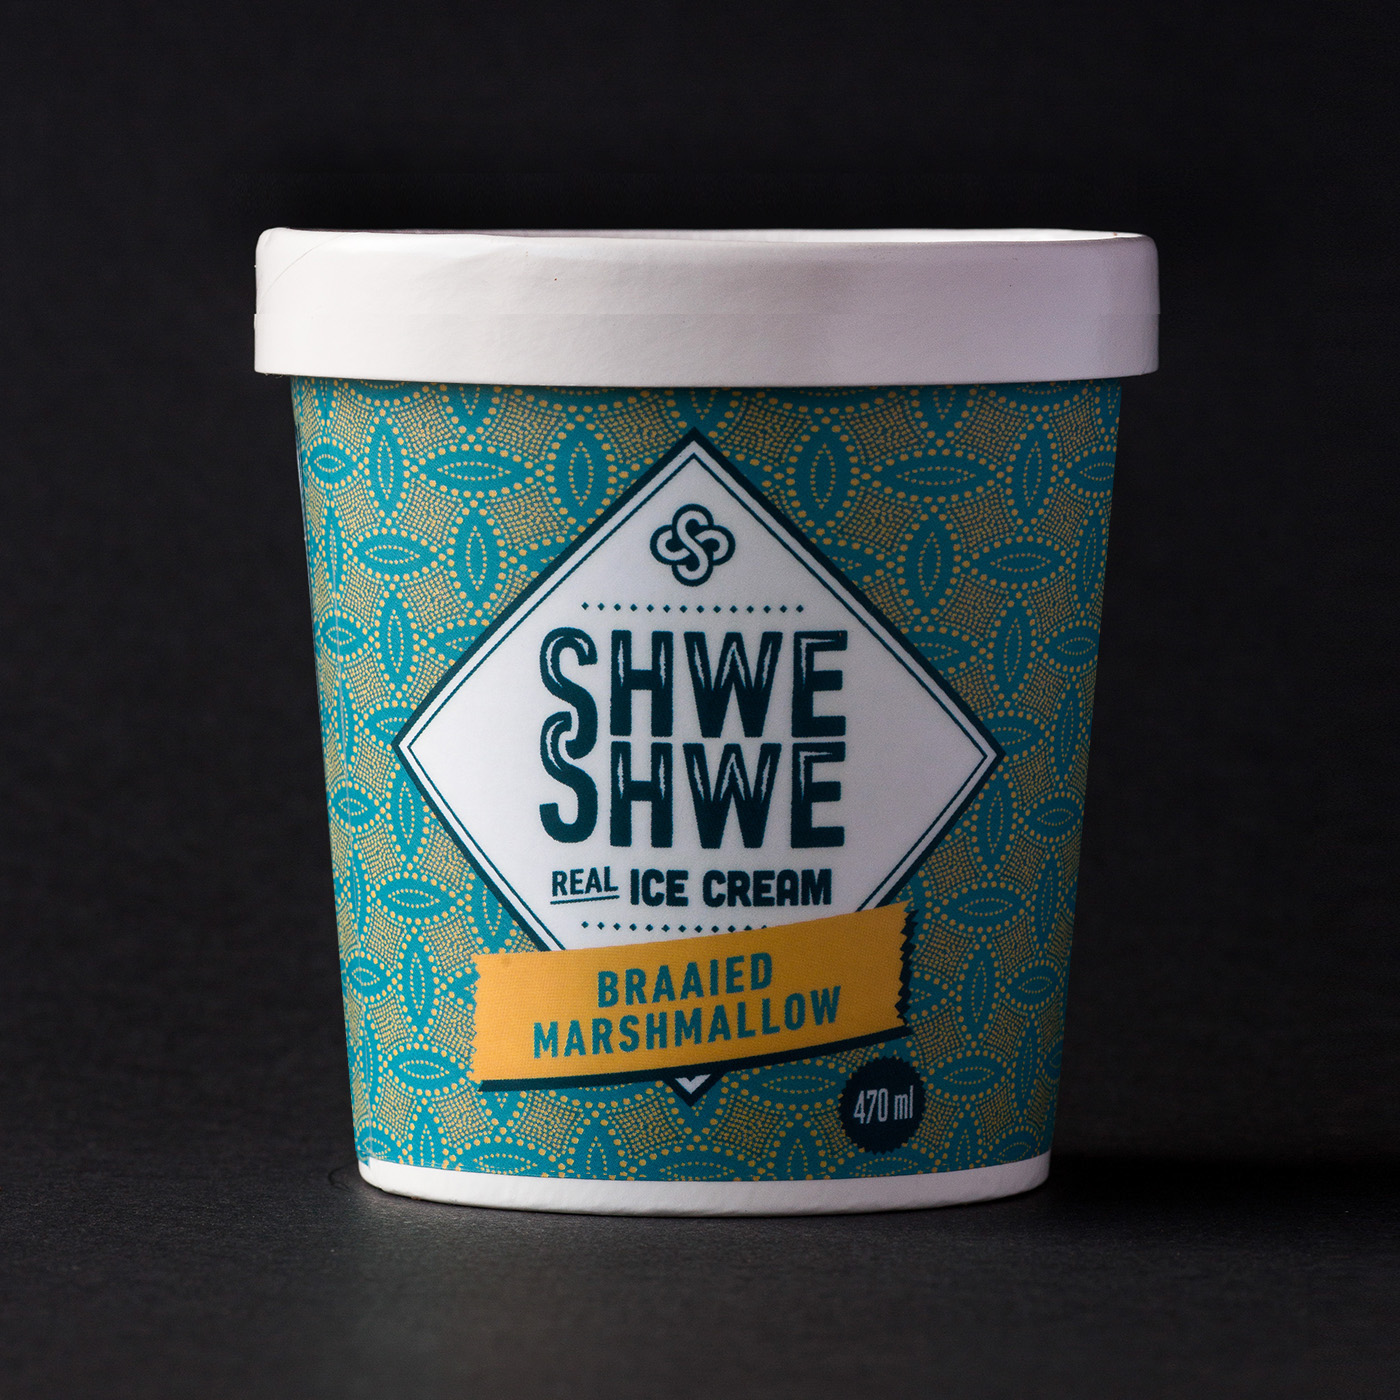 Ice Cream Community ice cream tub pint pattern Shweshwe